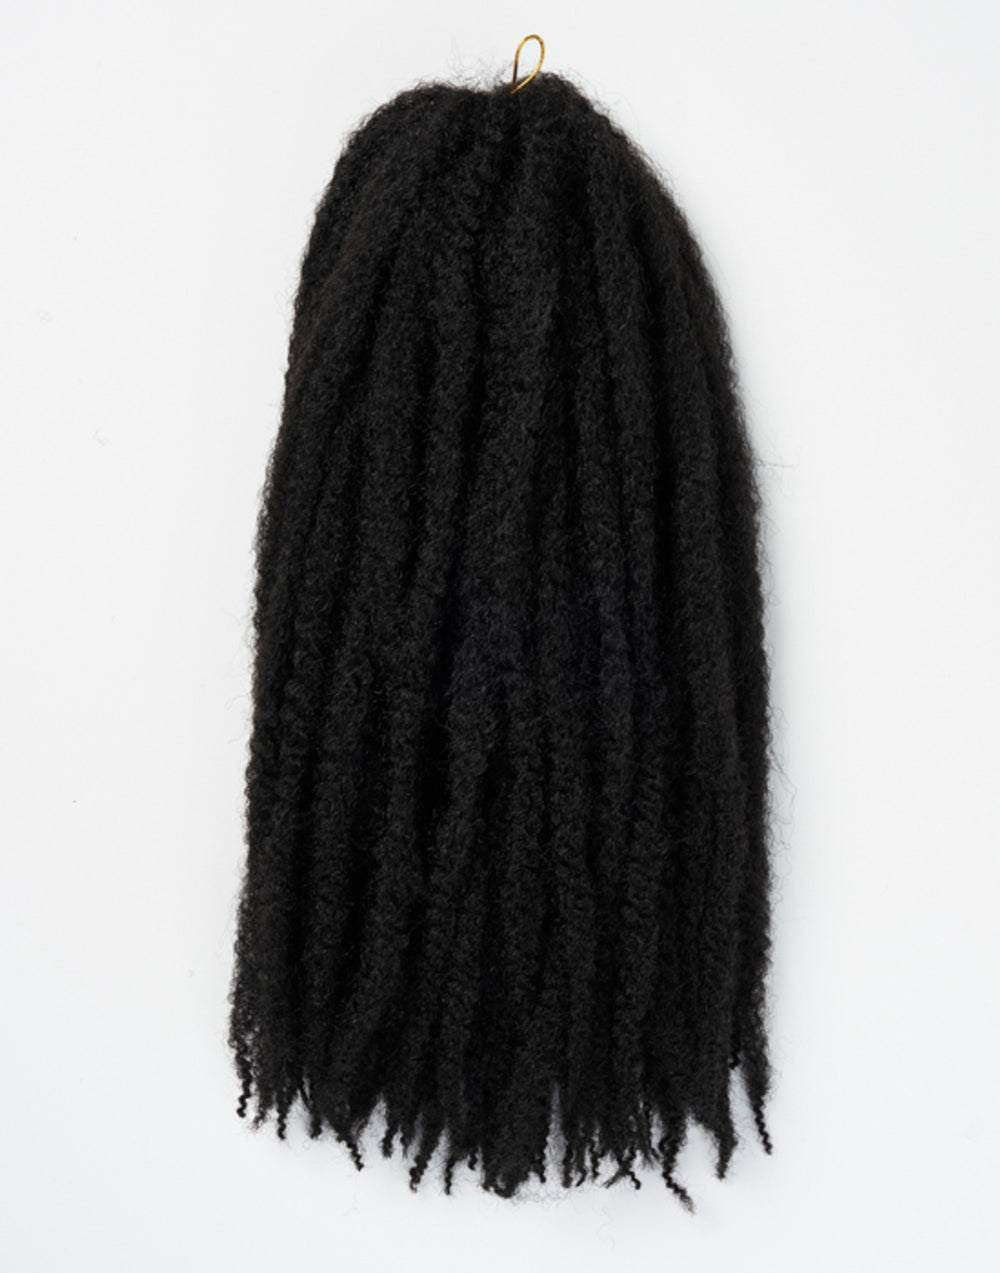 Soft n Silky Afro Twist Braid Synthetic No. 1B